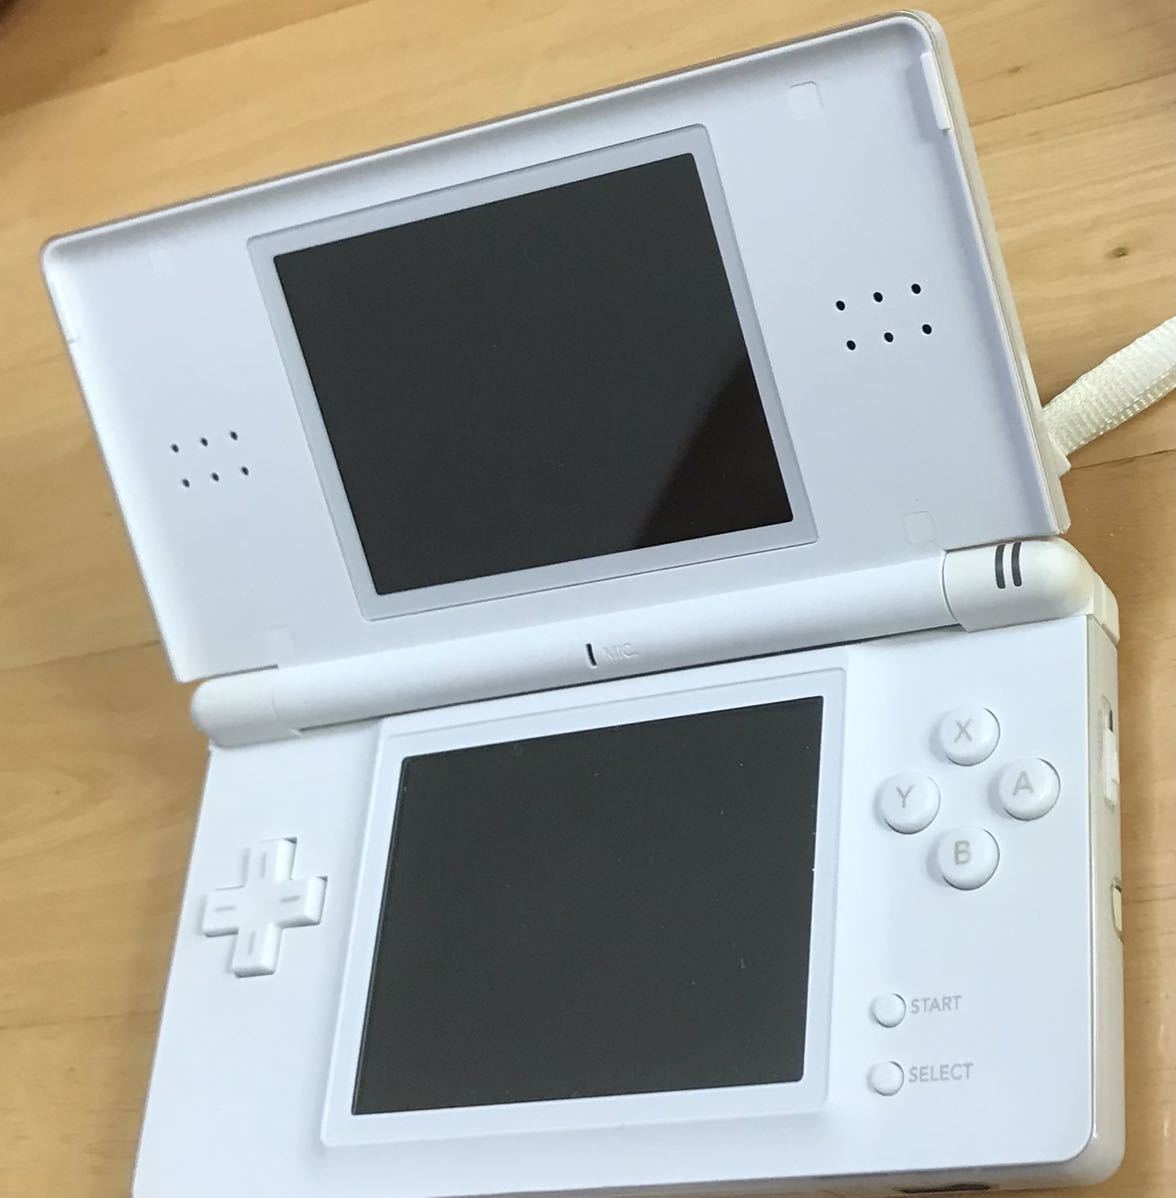 【動作確認済み】Nintendo DS Lite クリスタルホワイト